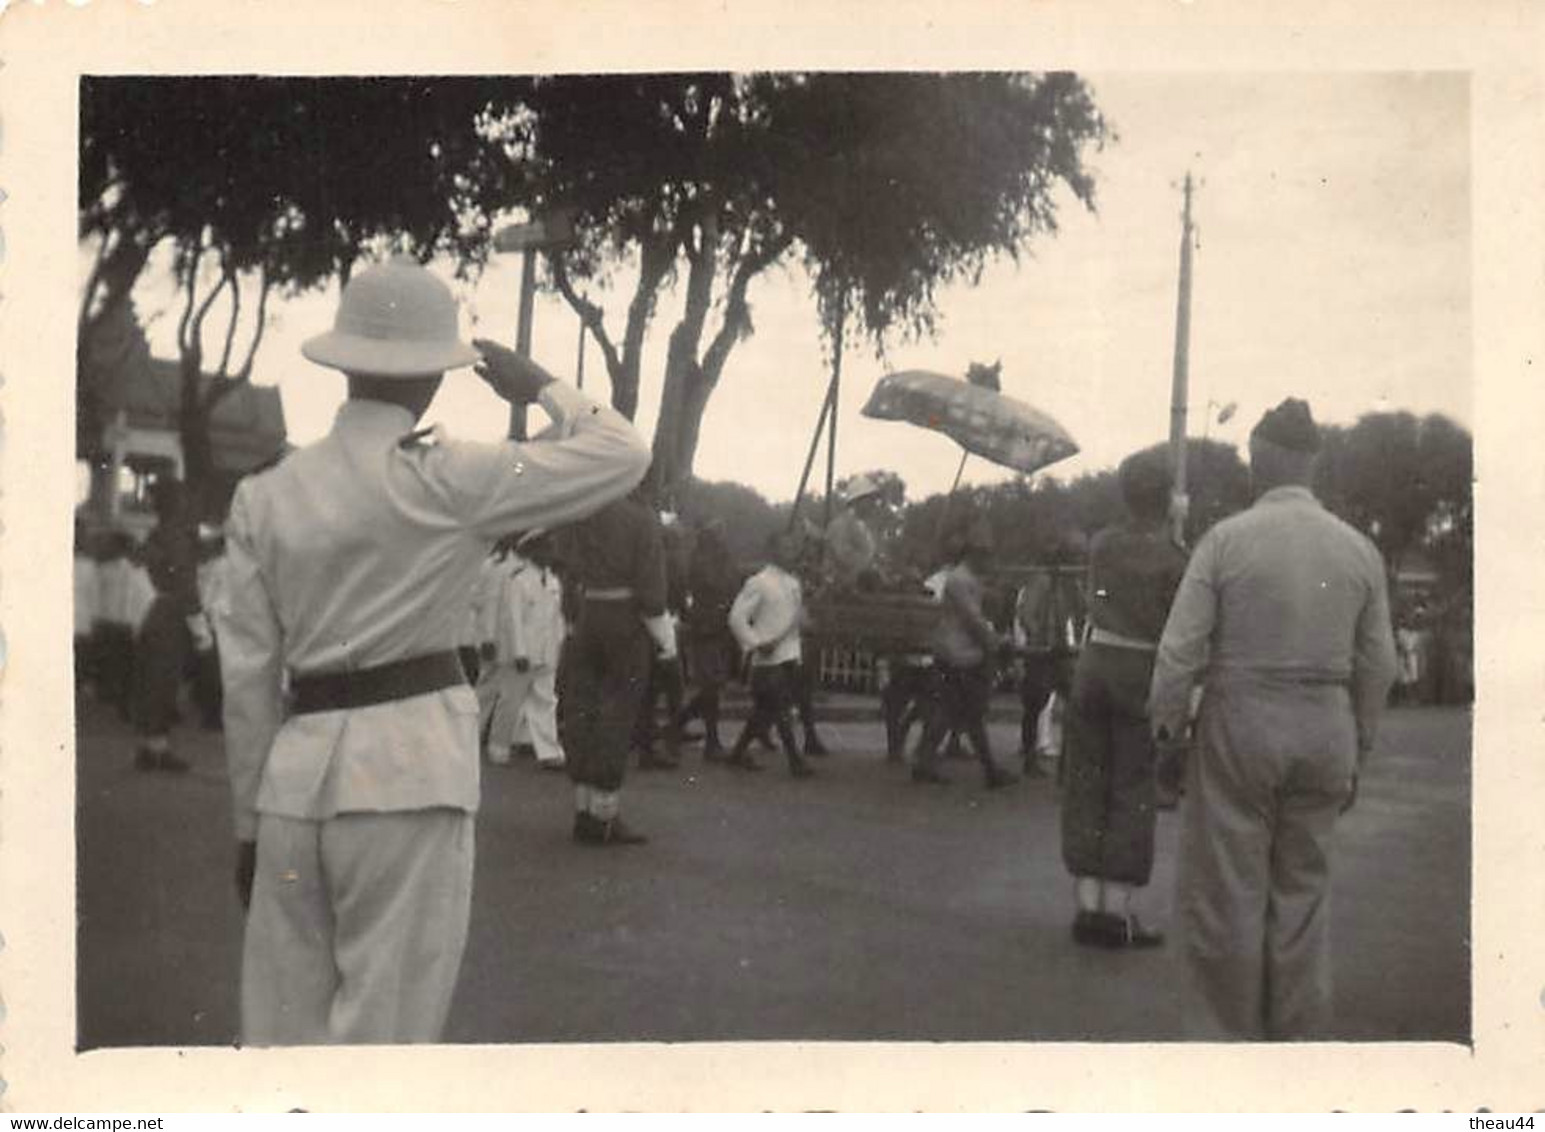 ¤¤  -  CAMBODGE  -   Cliché Du Roi Lors D'une Fête Le 15 Novembre 1948   -  Voir Description       -  ¤¤ - Cambodge